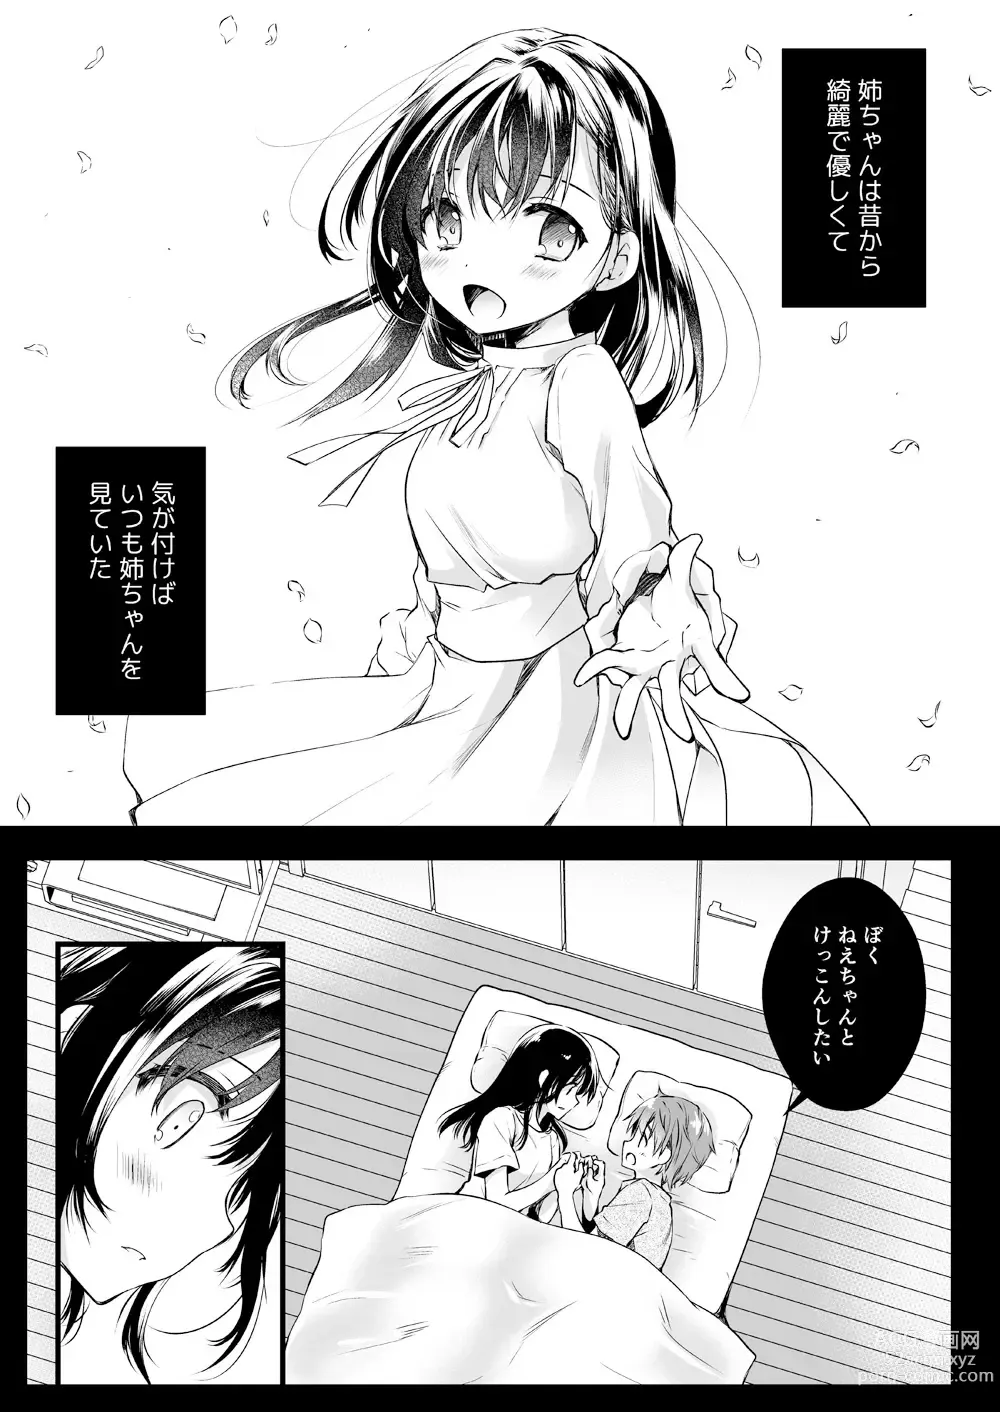 Page 2 of doujinshi Otona ni Naru made Matenai